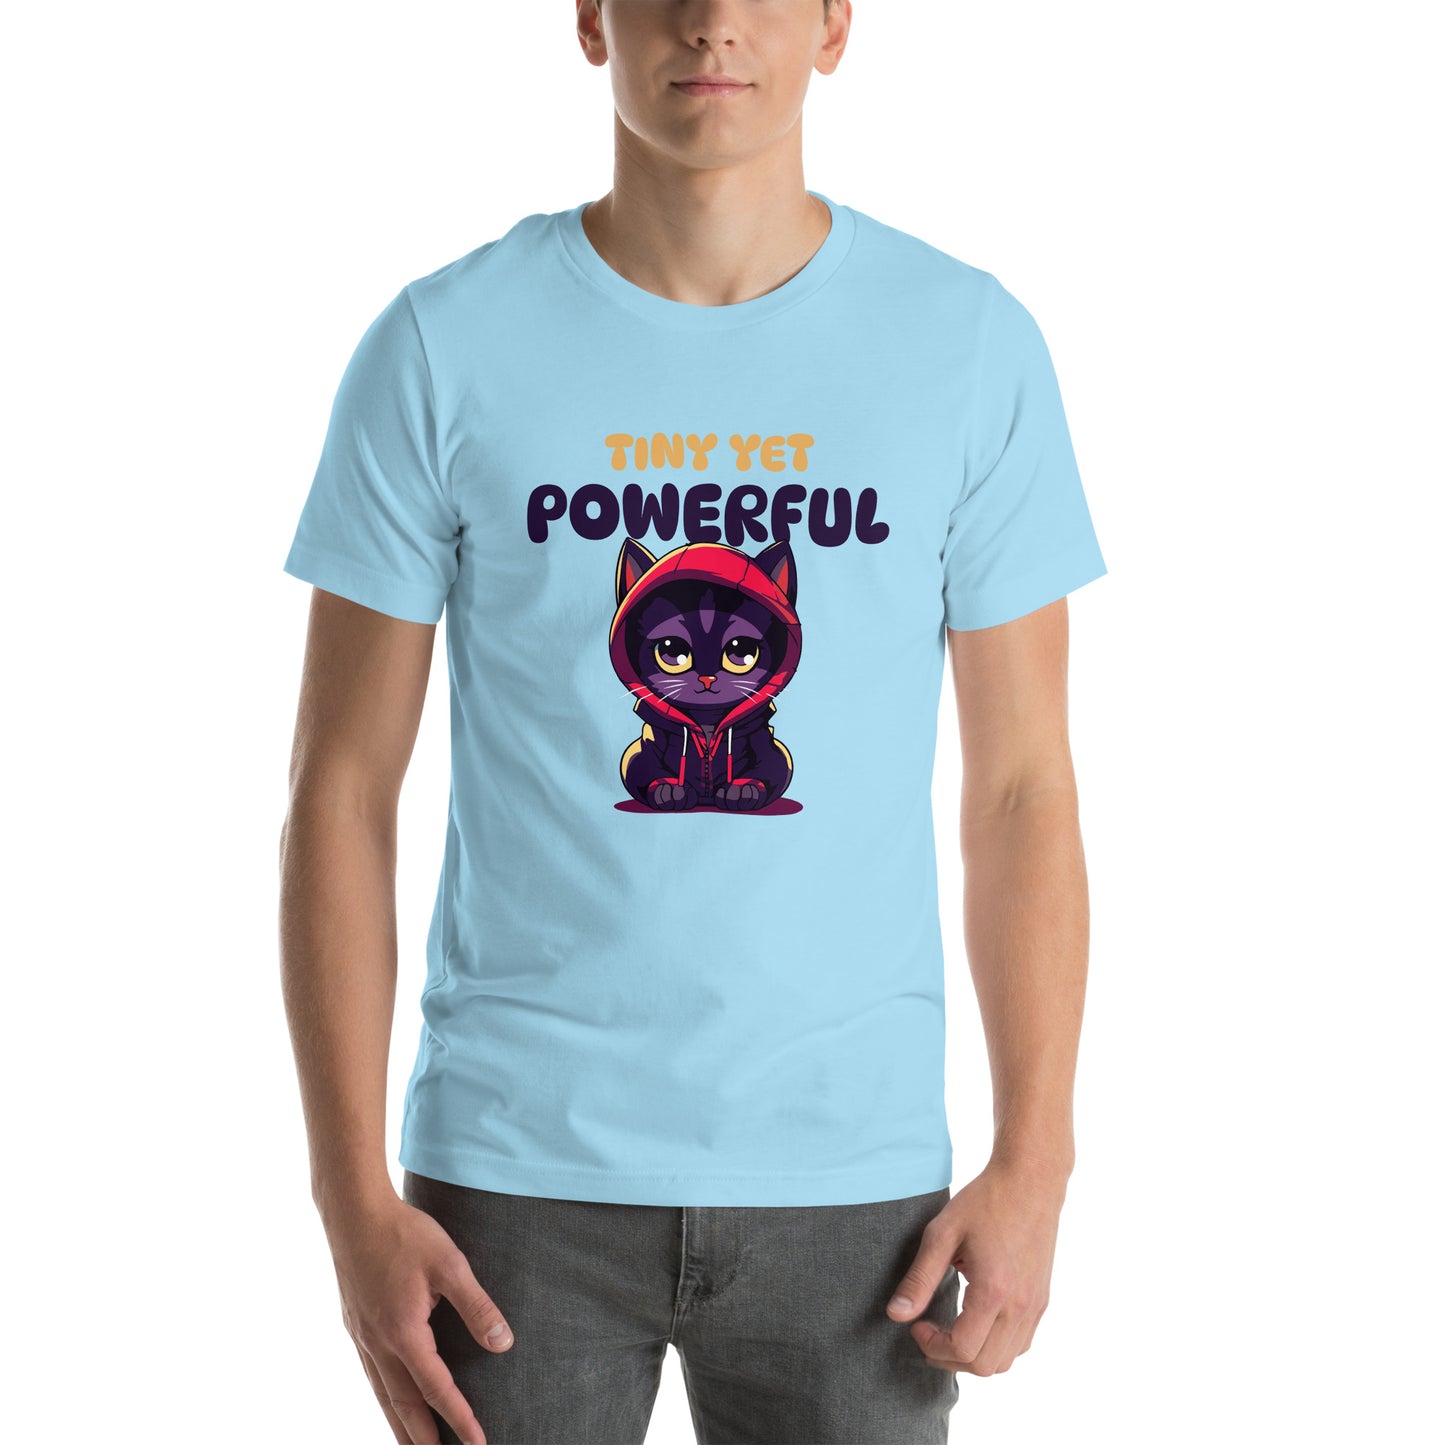 Tiny Yet powerful Unisex t-shirt